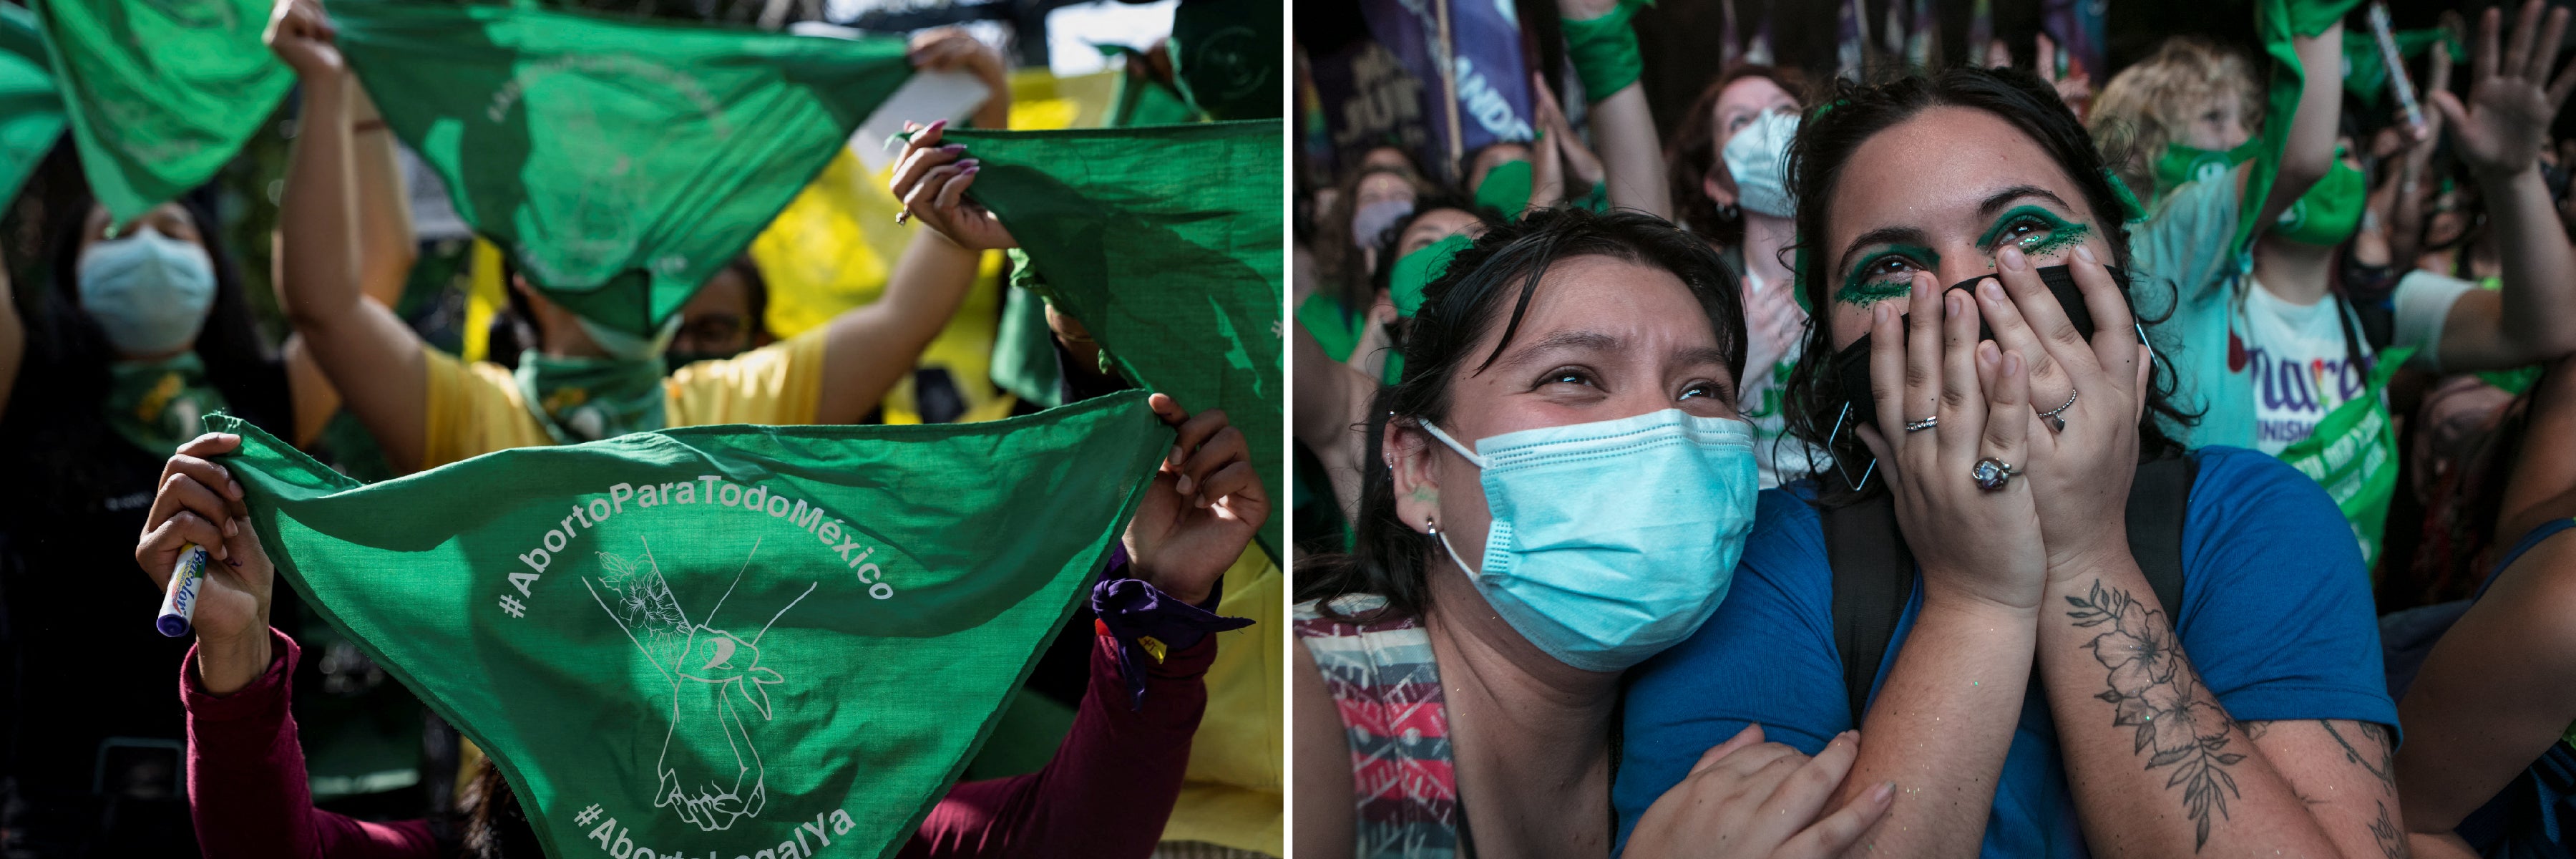 左：墨西哥墮胎權支持者在美國大使館前舉起象徵支持墮胎權的綠色領巾，墨西哥市，2022年6月29日。右：支持人工流產選擇權（Pro-choice）示威者慶祝阿根廷國會審議人工流產合法化法案，布宜諾斯艾利斯，2020年12月29日。阿根廷國會已於2020年12月30日通過該法案。